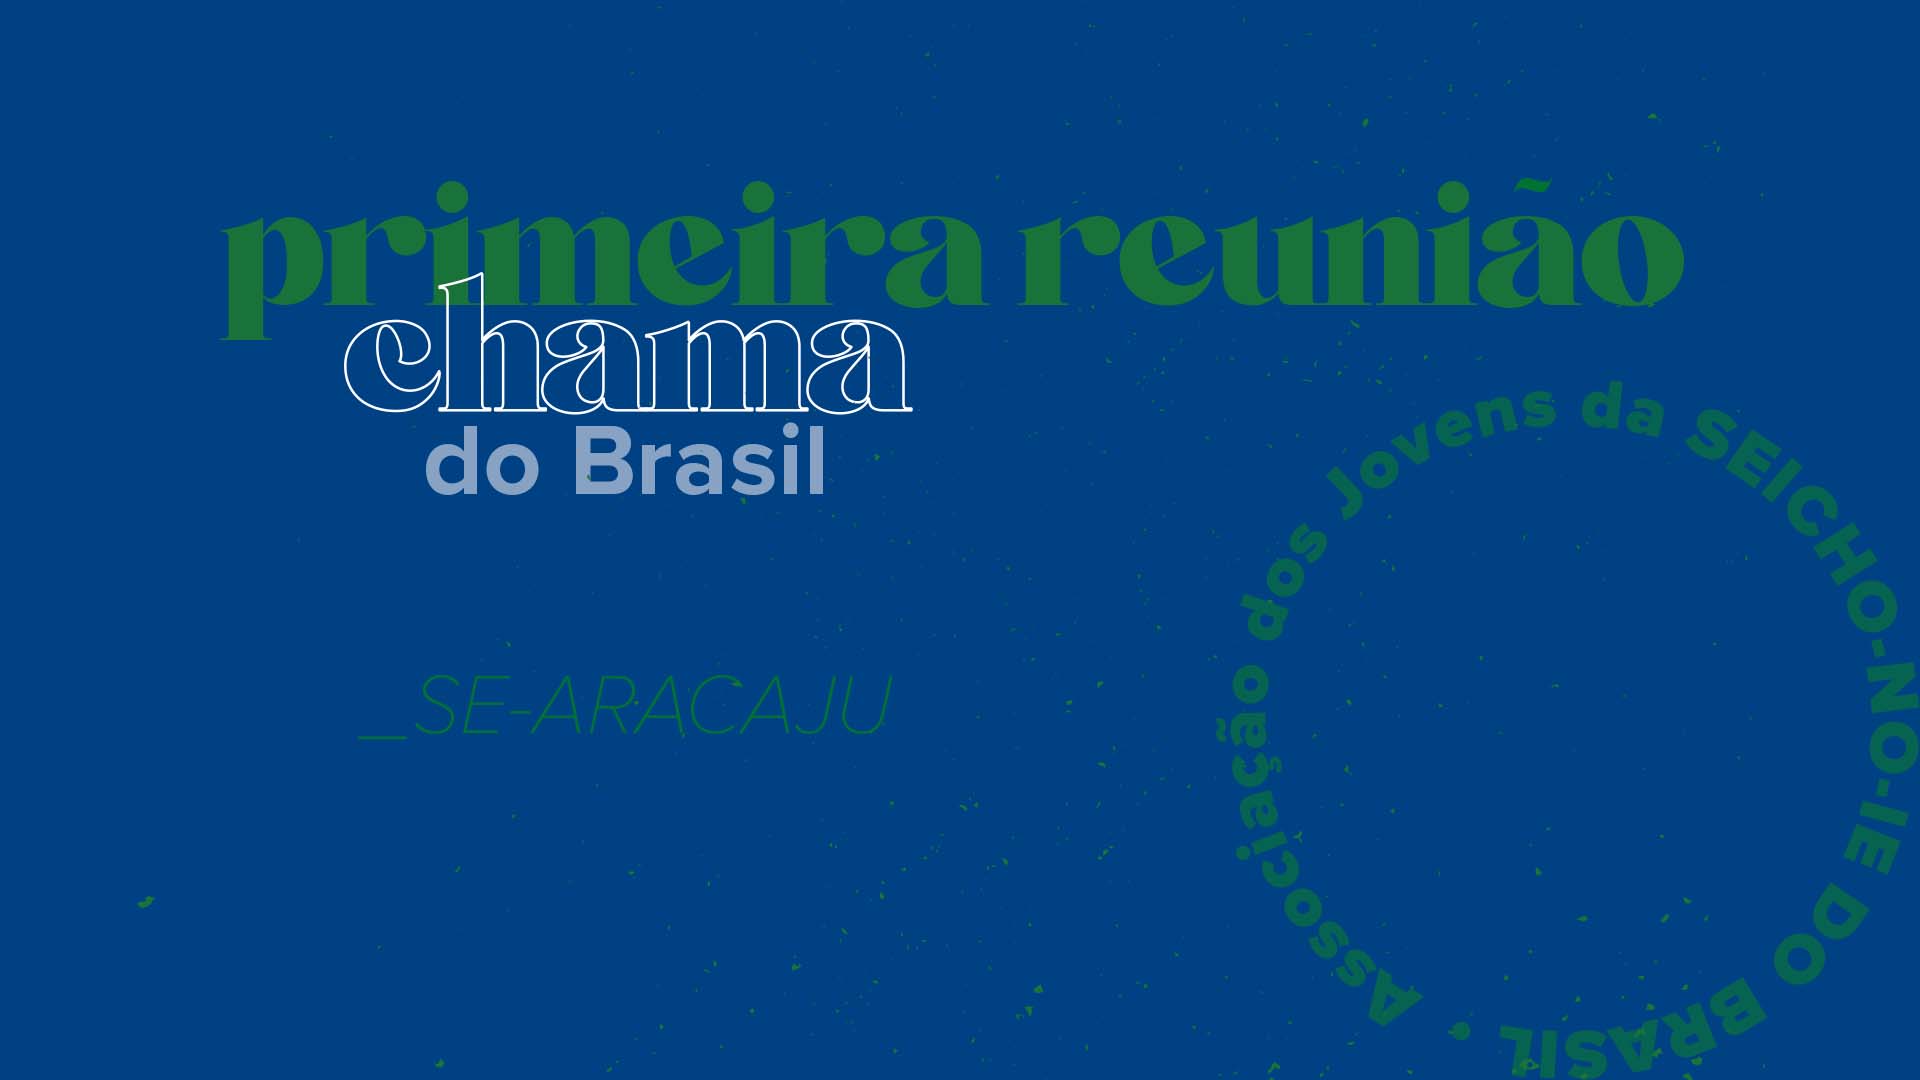 07 reuniaochama 1 Primeira Reunião Chama do Brasil